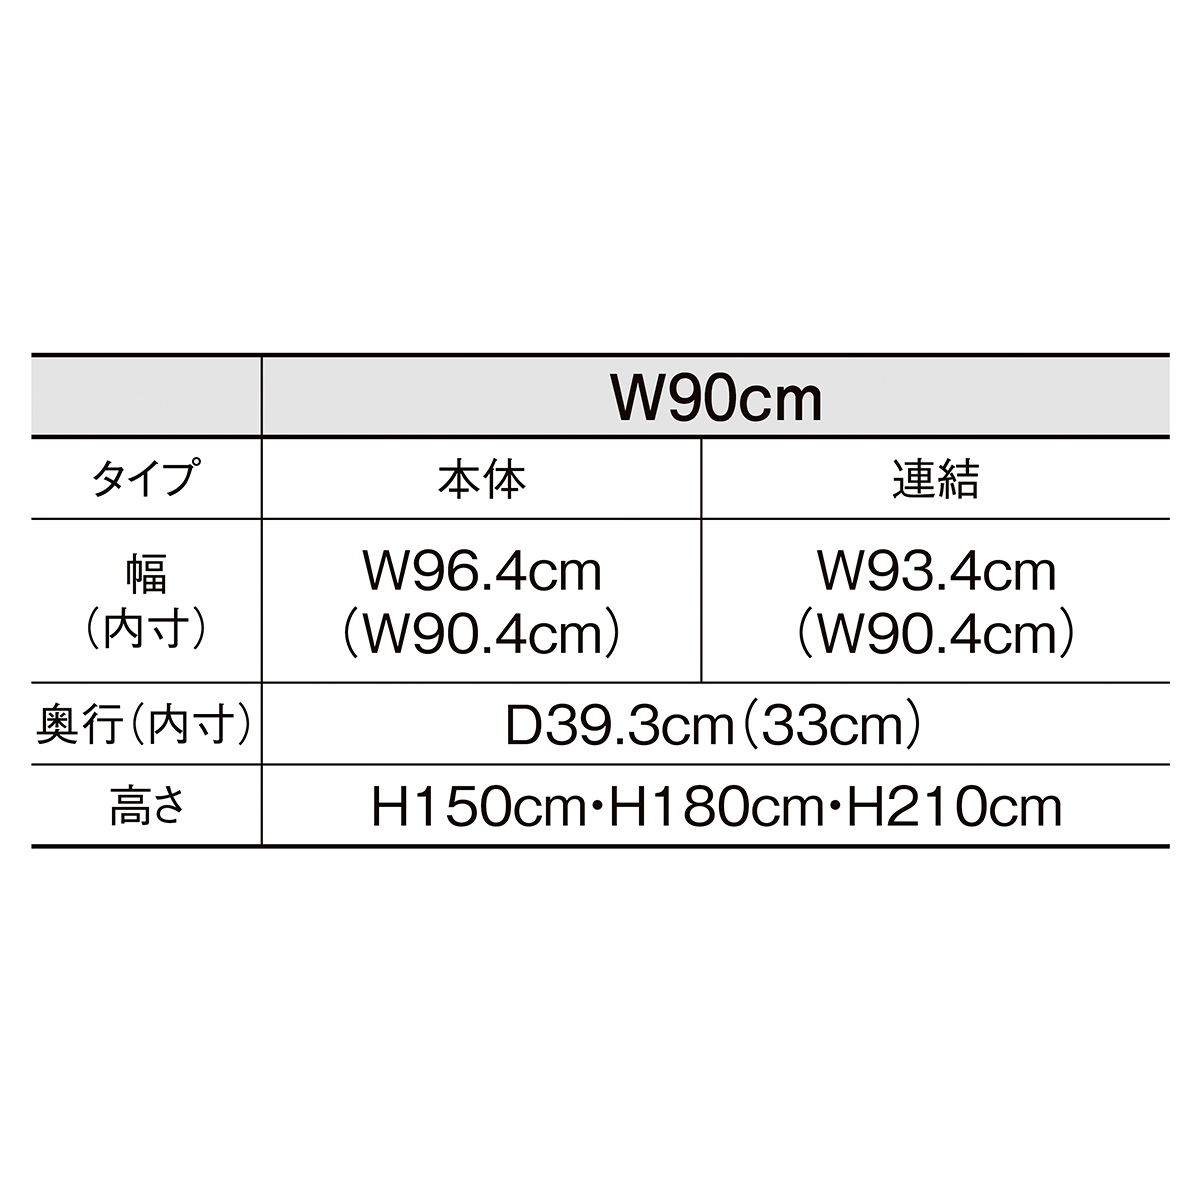 今日の超目玉】 ネットタイプ W90cm 本体 ブラック H180cm